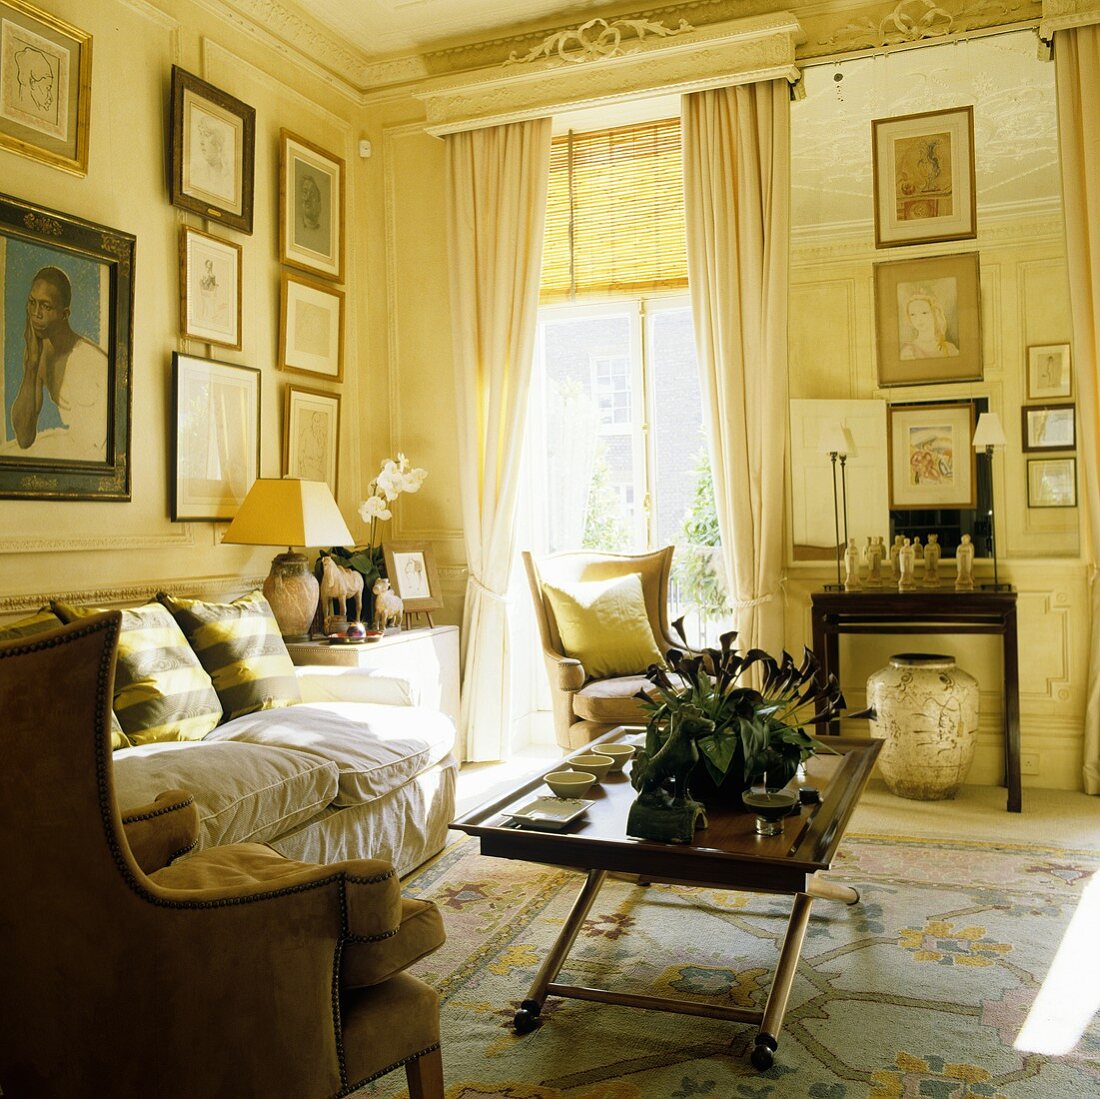 Wohnraum einer Villa mit raumhohem Fenster und Couchtisch mit Sofa vor Bildern an Wand